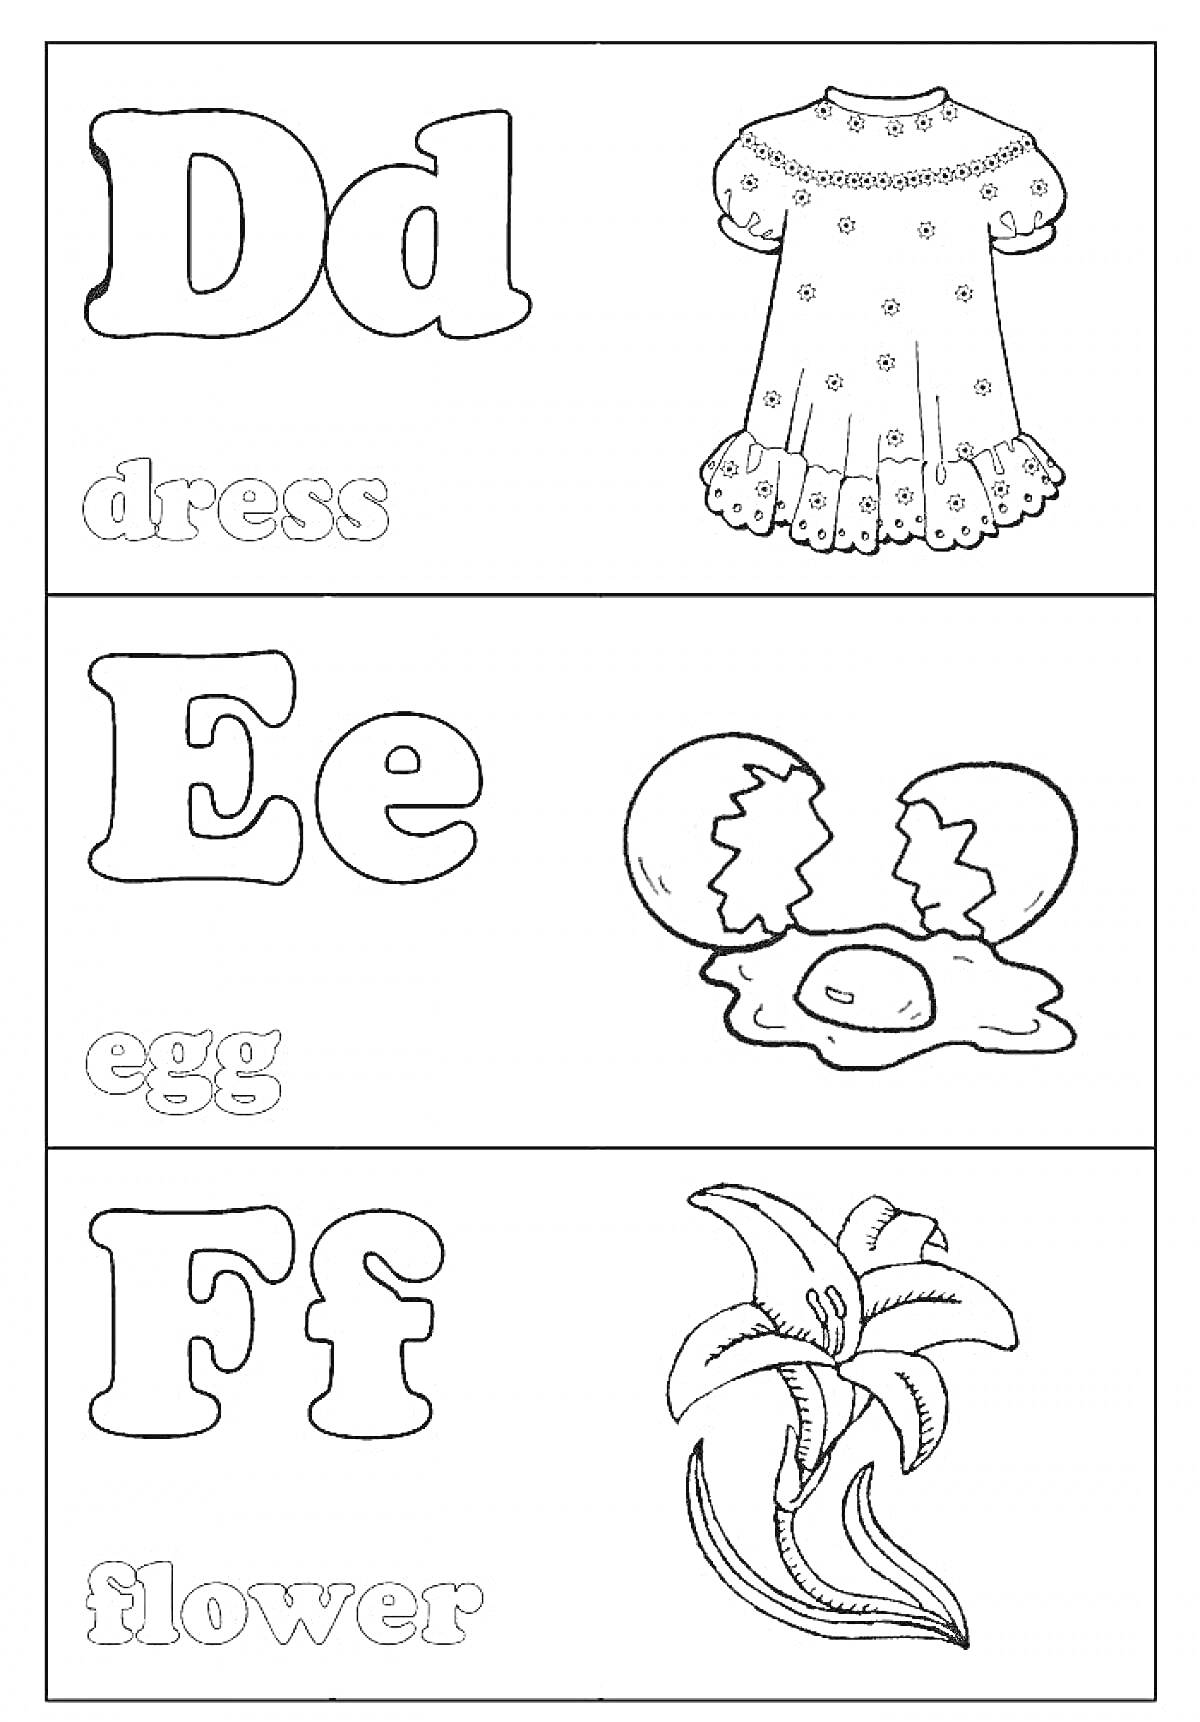 Раскраска Английский алфавит - Dd: платье, Ee: яйцо, Ff: цветок